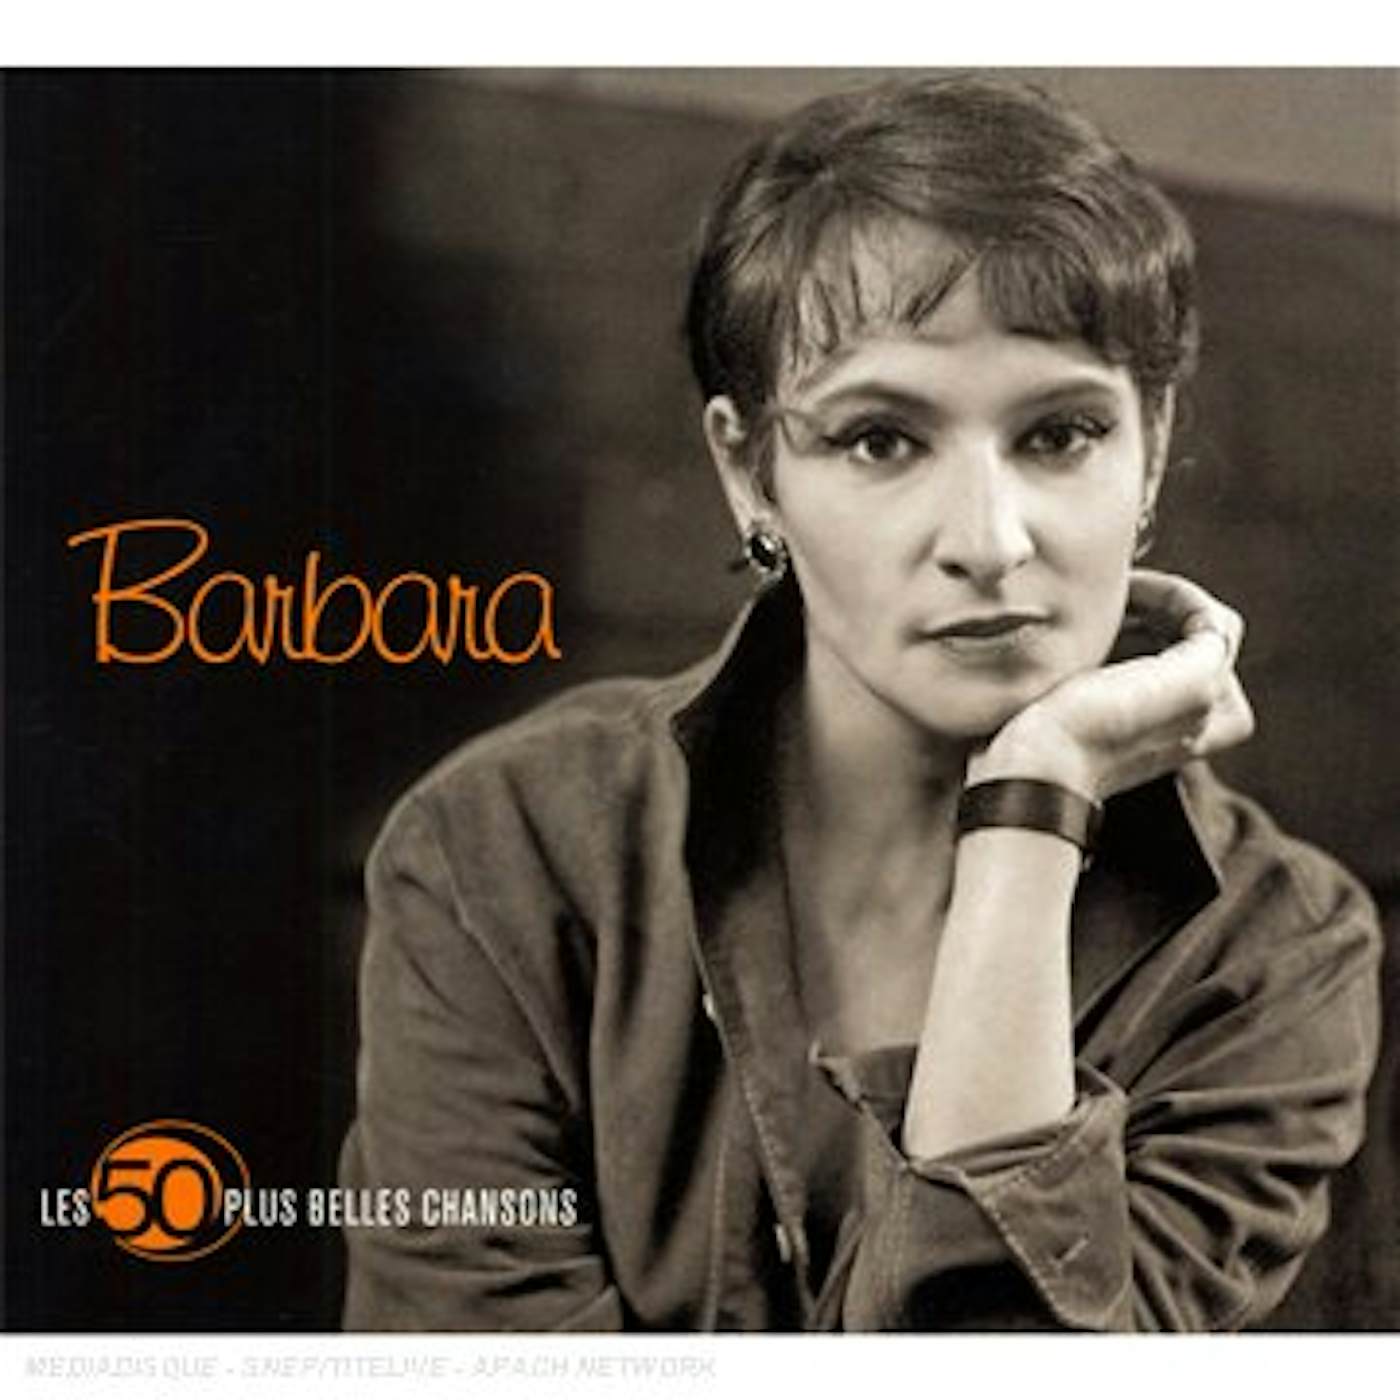 Barbara 50 PLUS BELLES CHANSONS CD